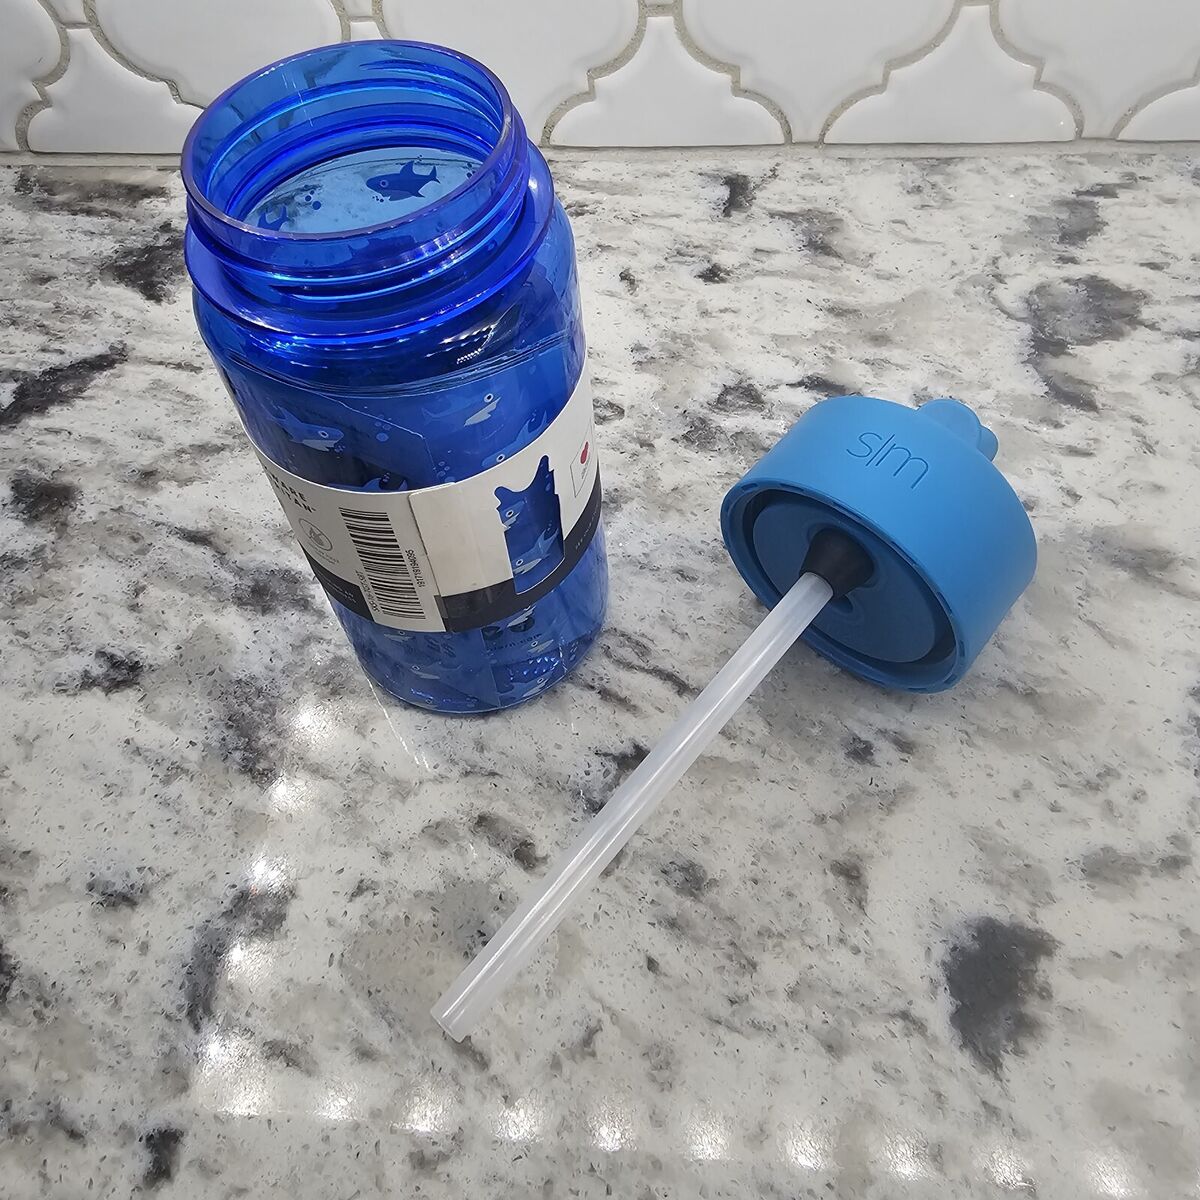 Simple Modern Kids Water Bottle with Straw 16 oz Leak Proof